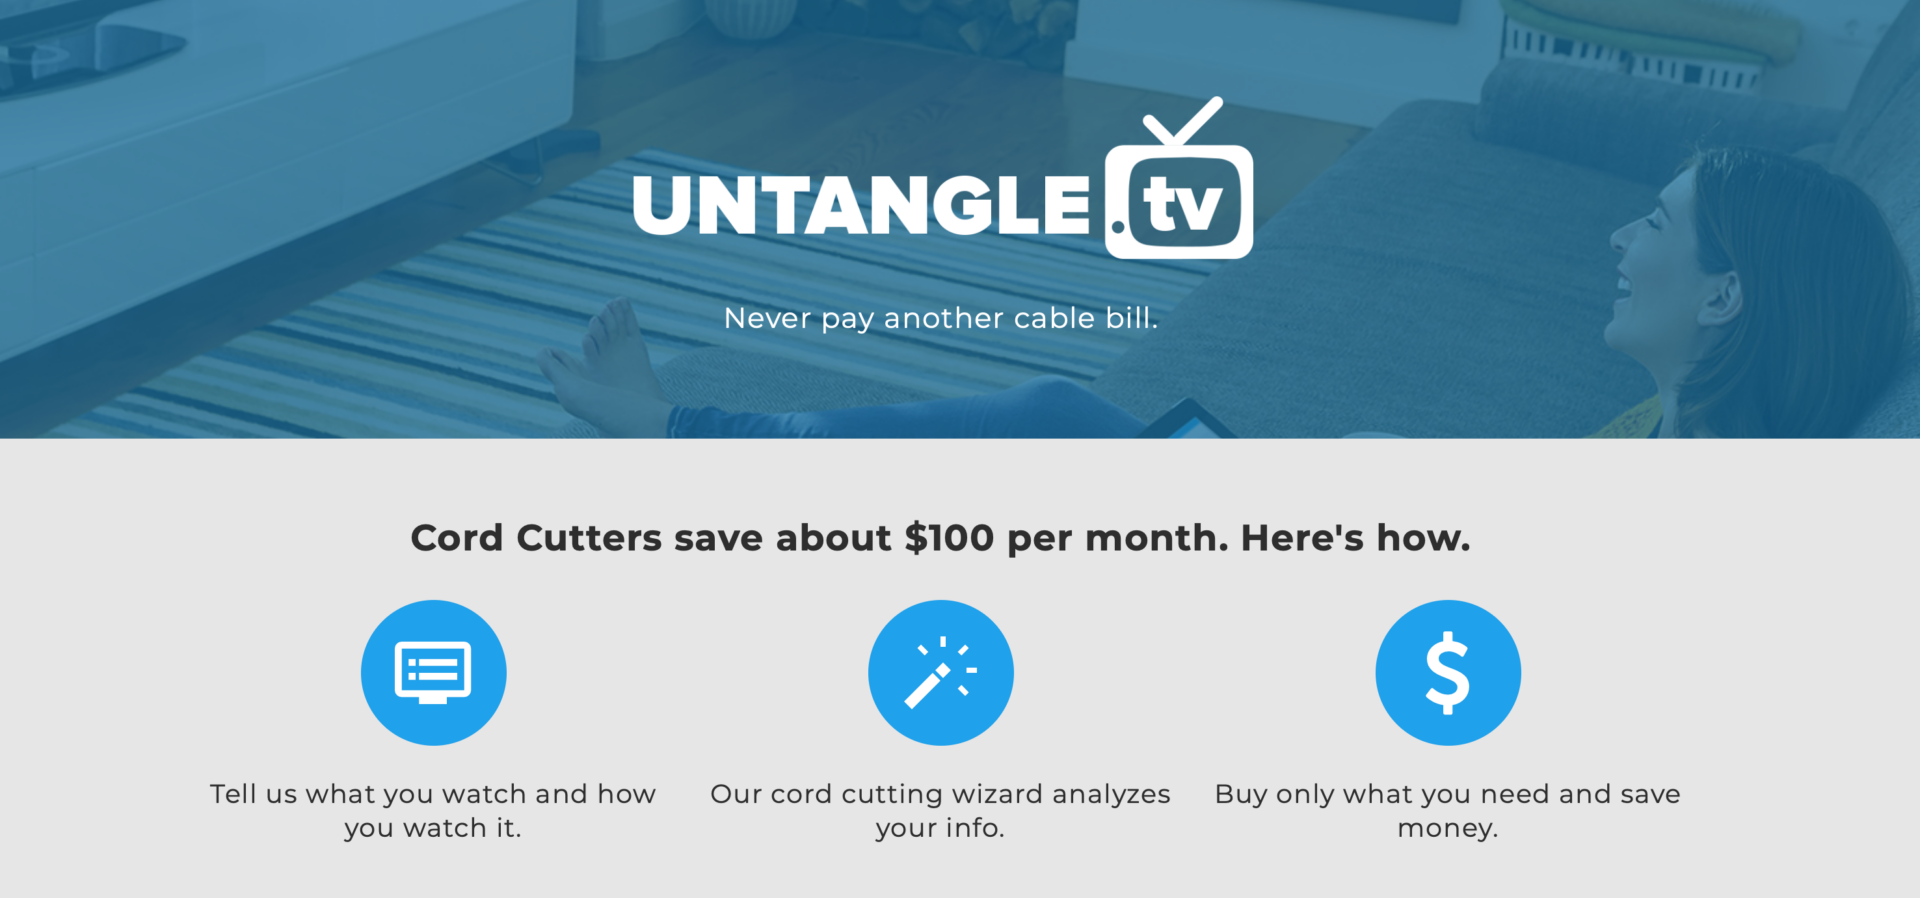 Untangle TV Web site